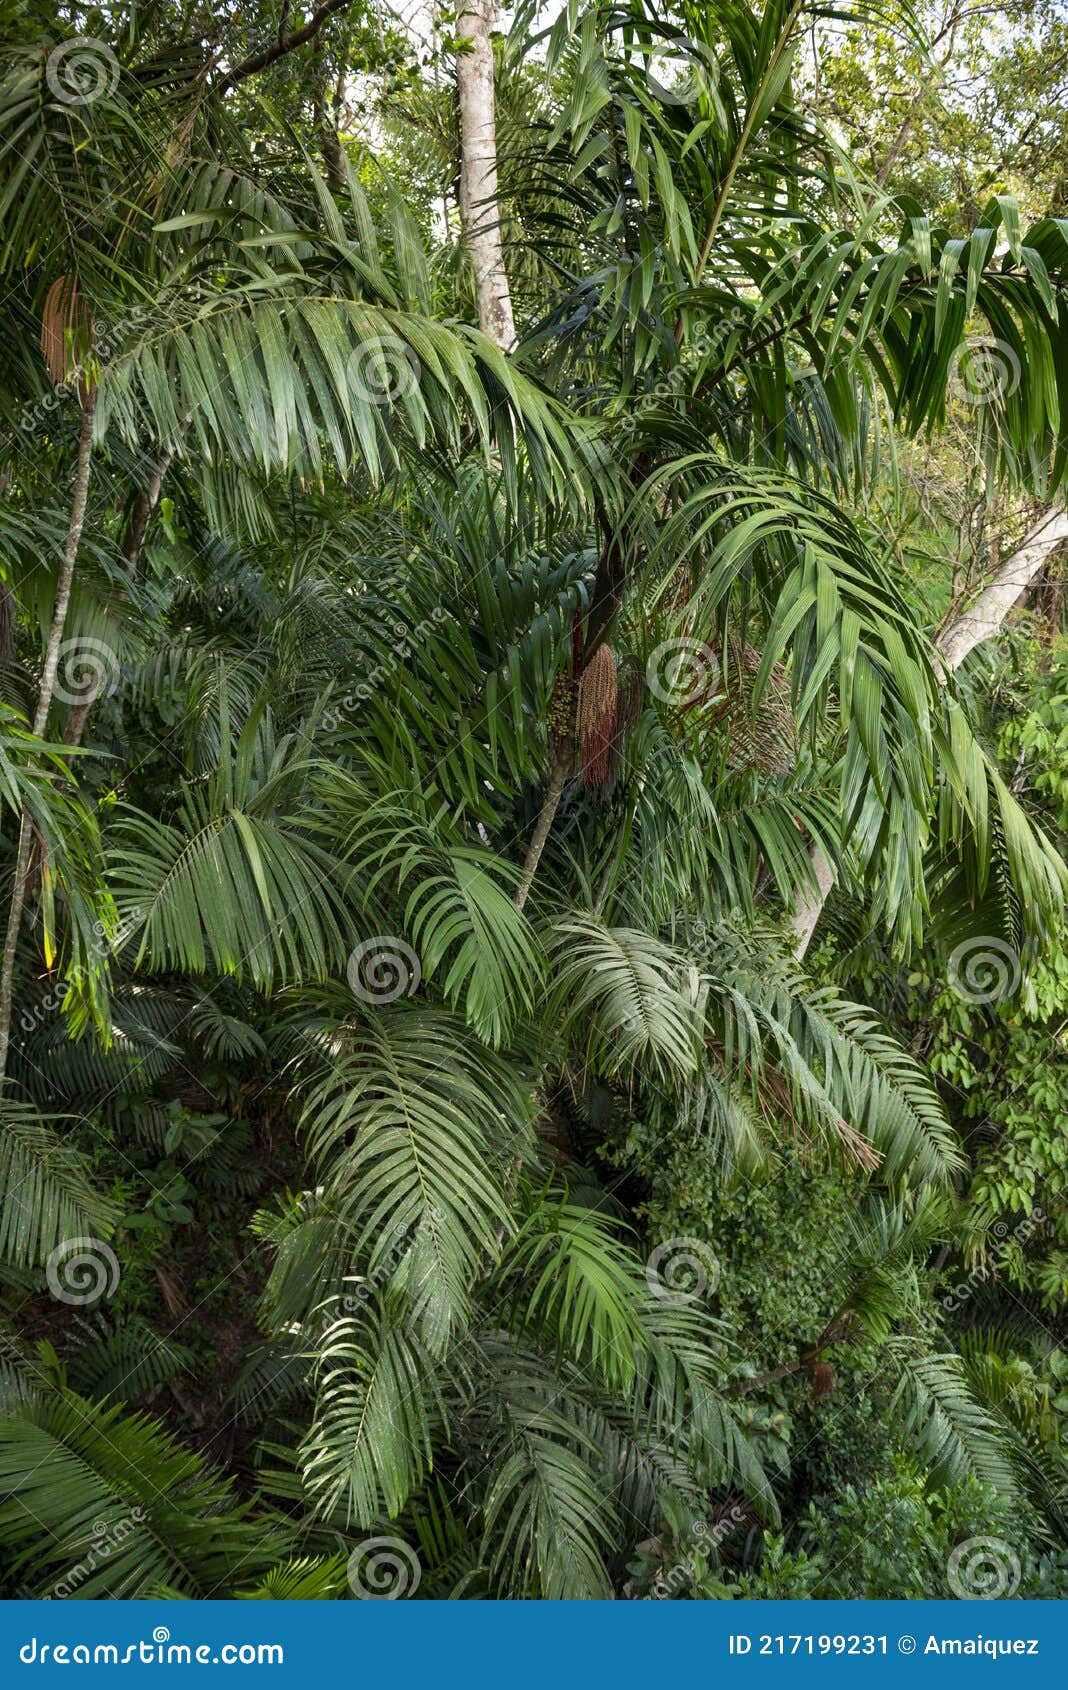 full frame shot of palm tree leaves